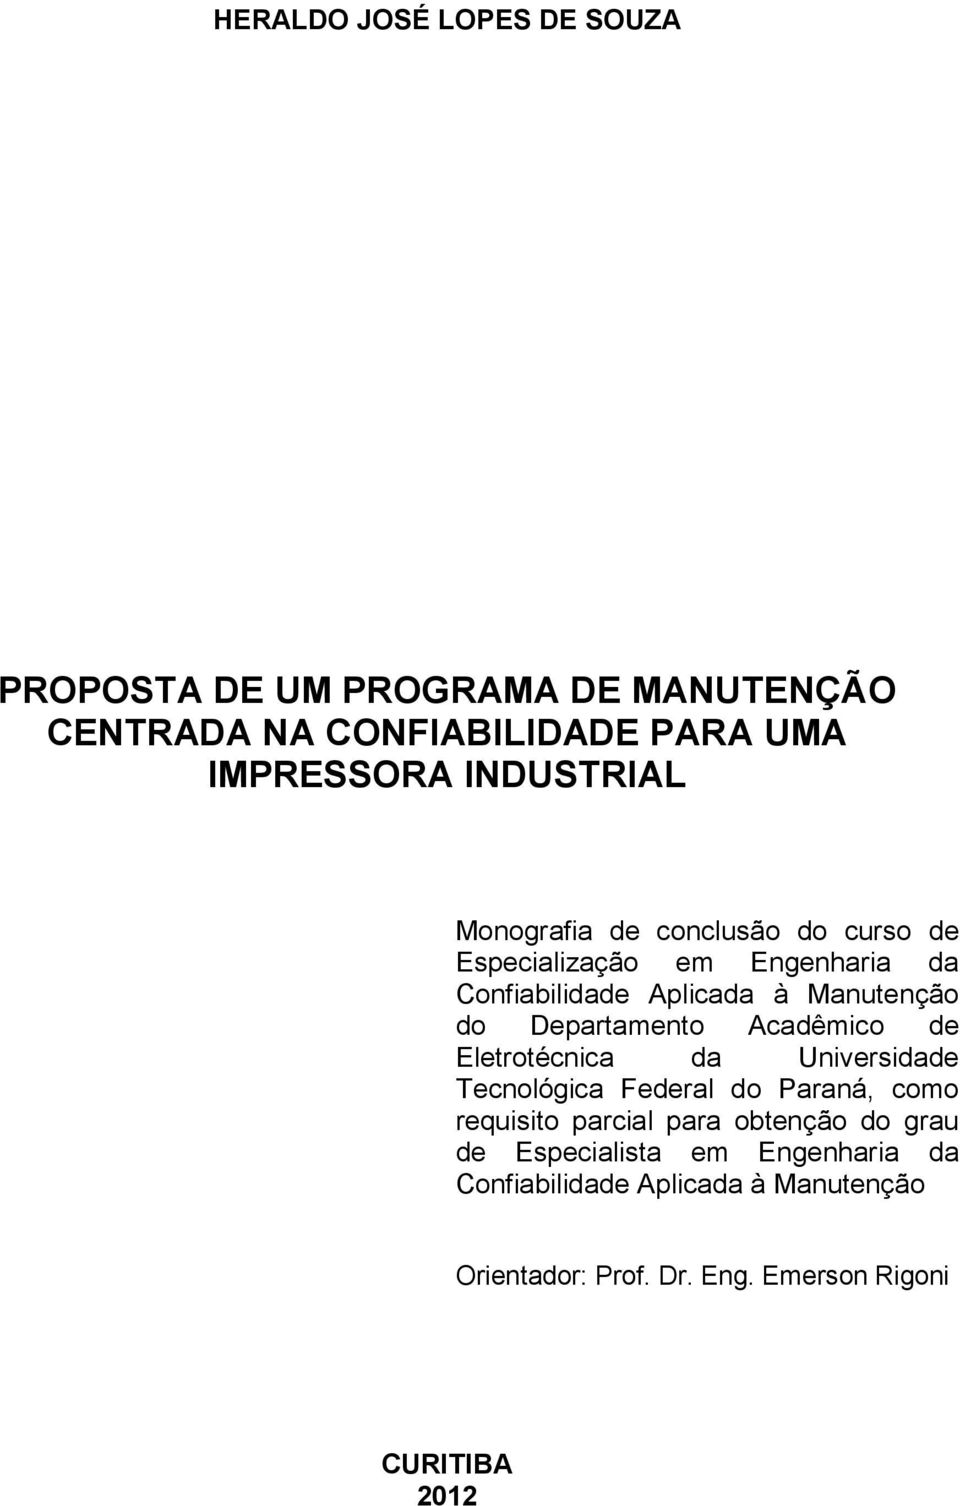 Departamento Acadêmico de Eletrotécnica da Universidade Tecnológica Federal do Paraná, como requisito parcial para